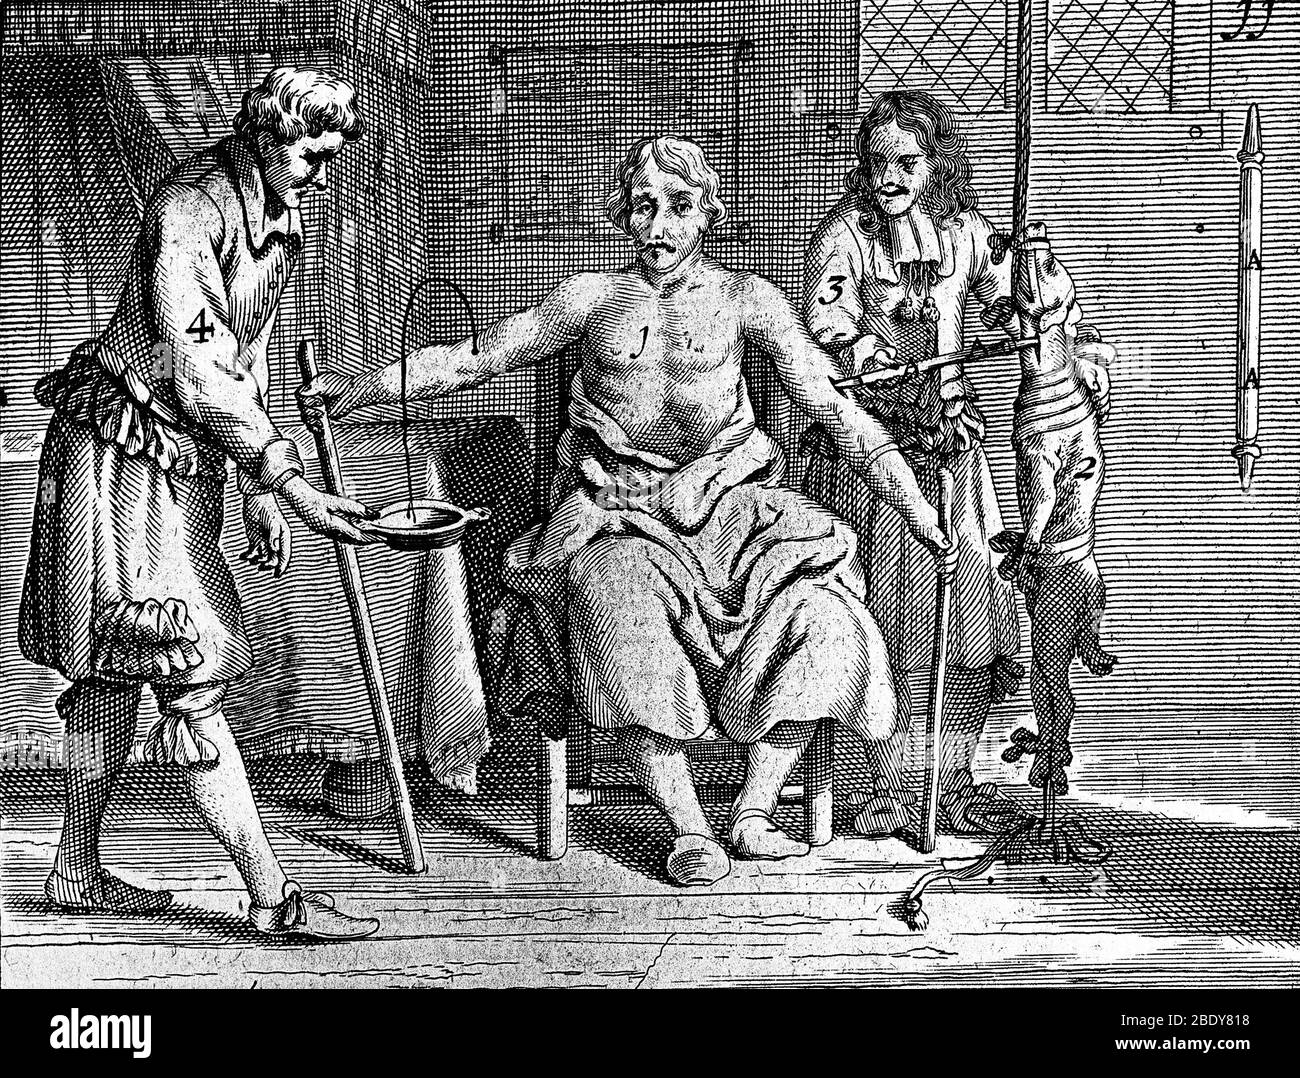 Transfusionnelle du sang de chien à homme, 1692 Banque D'Images